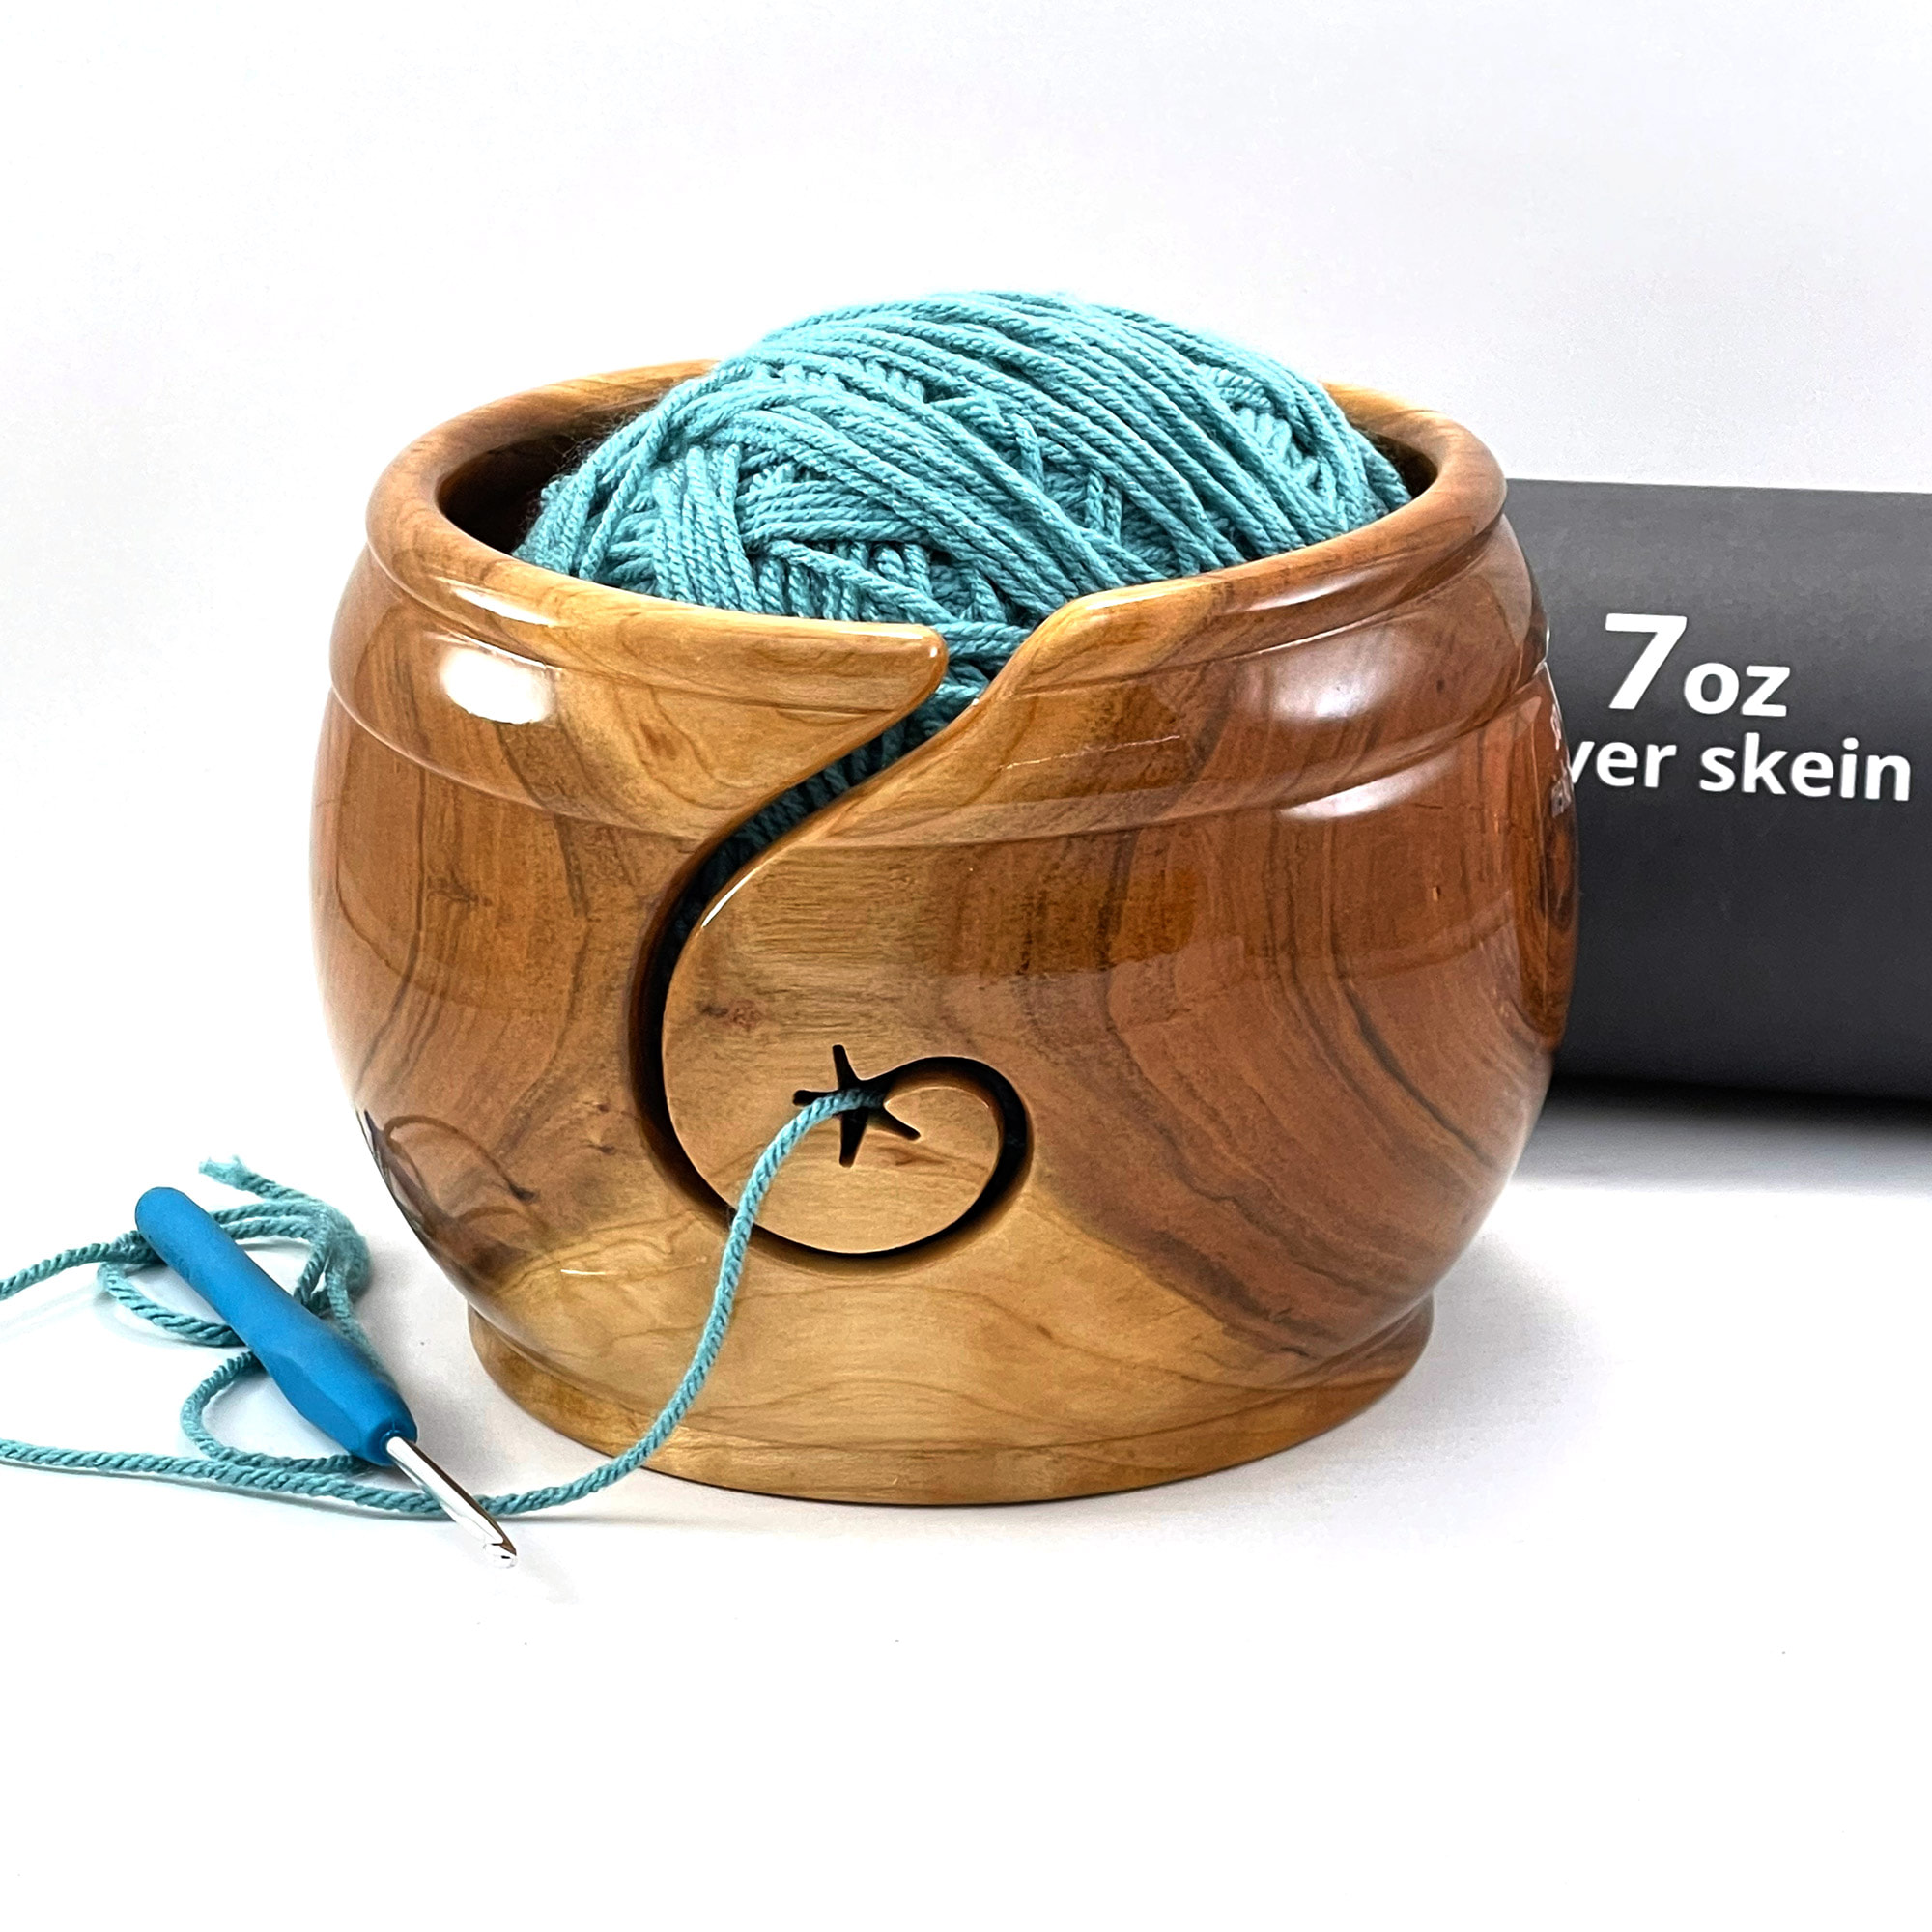 Wooden Yarn Bowls-YARNBOWL-W